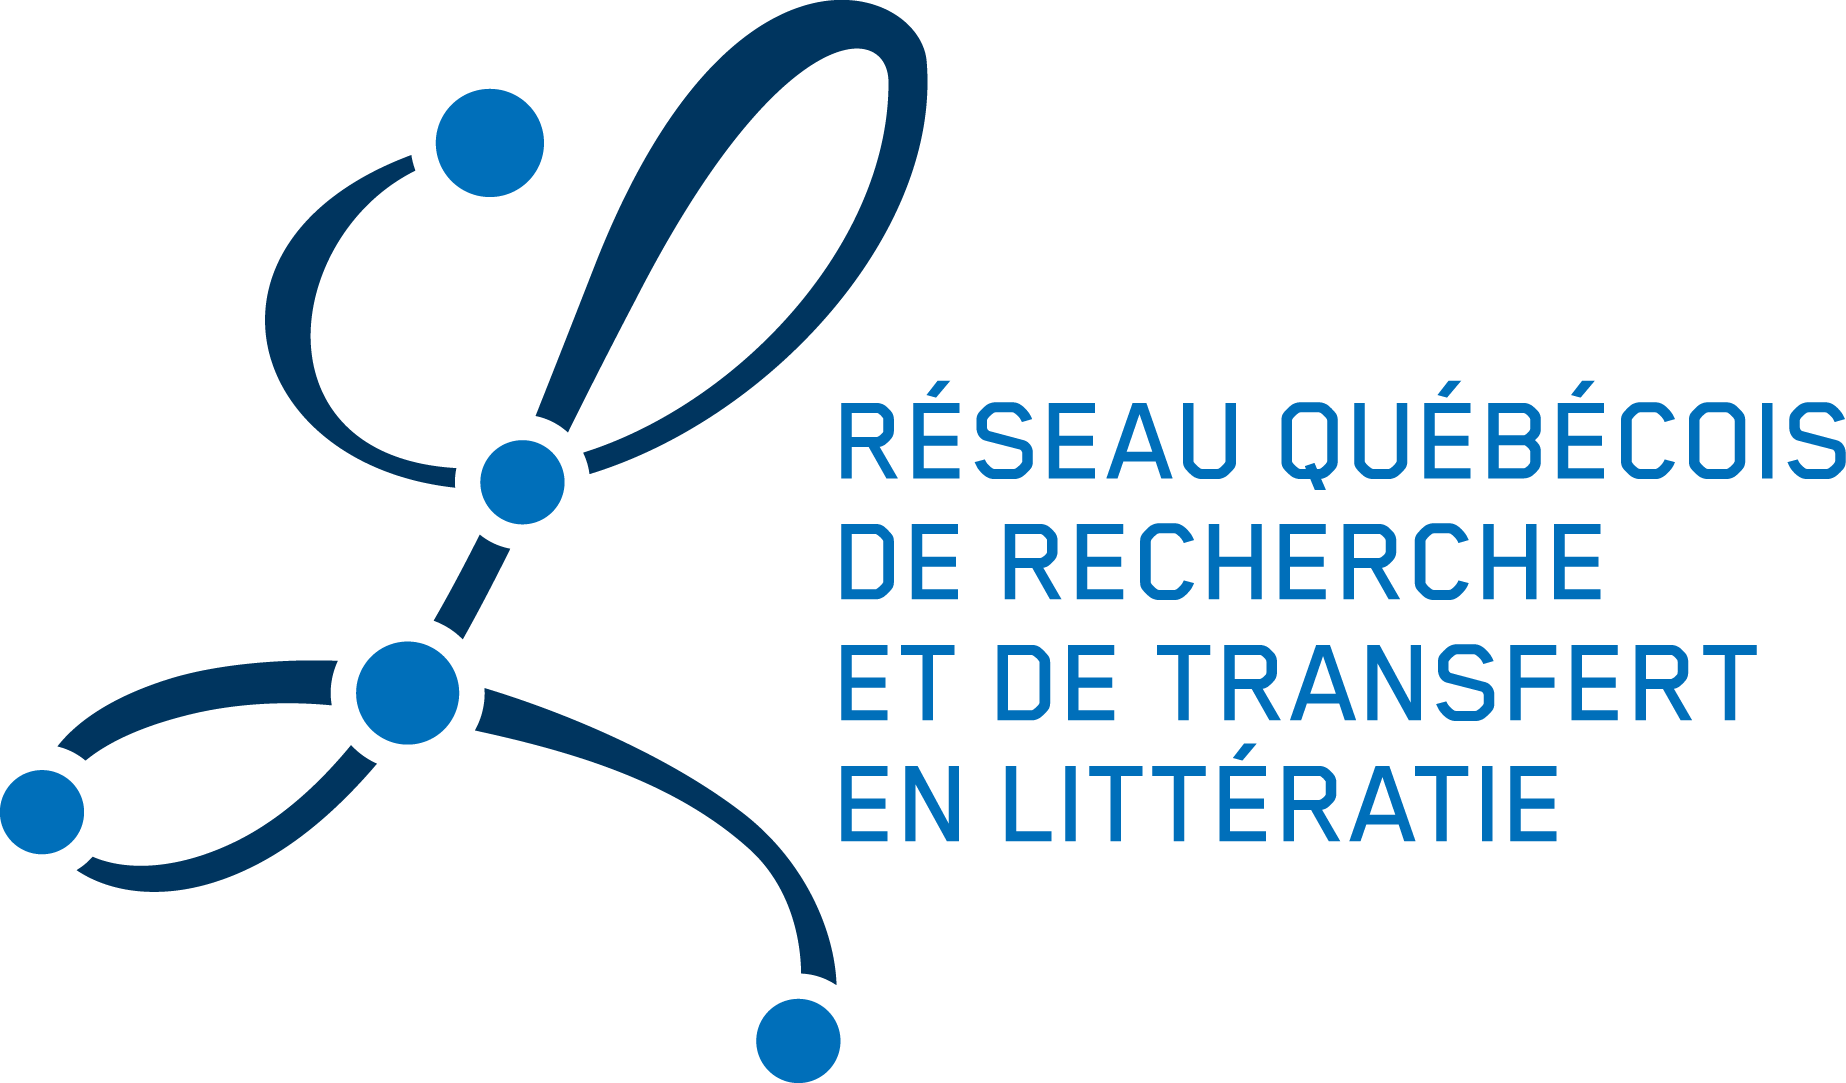 ctreq-reseau-quebecois-sur-la-litteratie-logo-19983